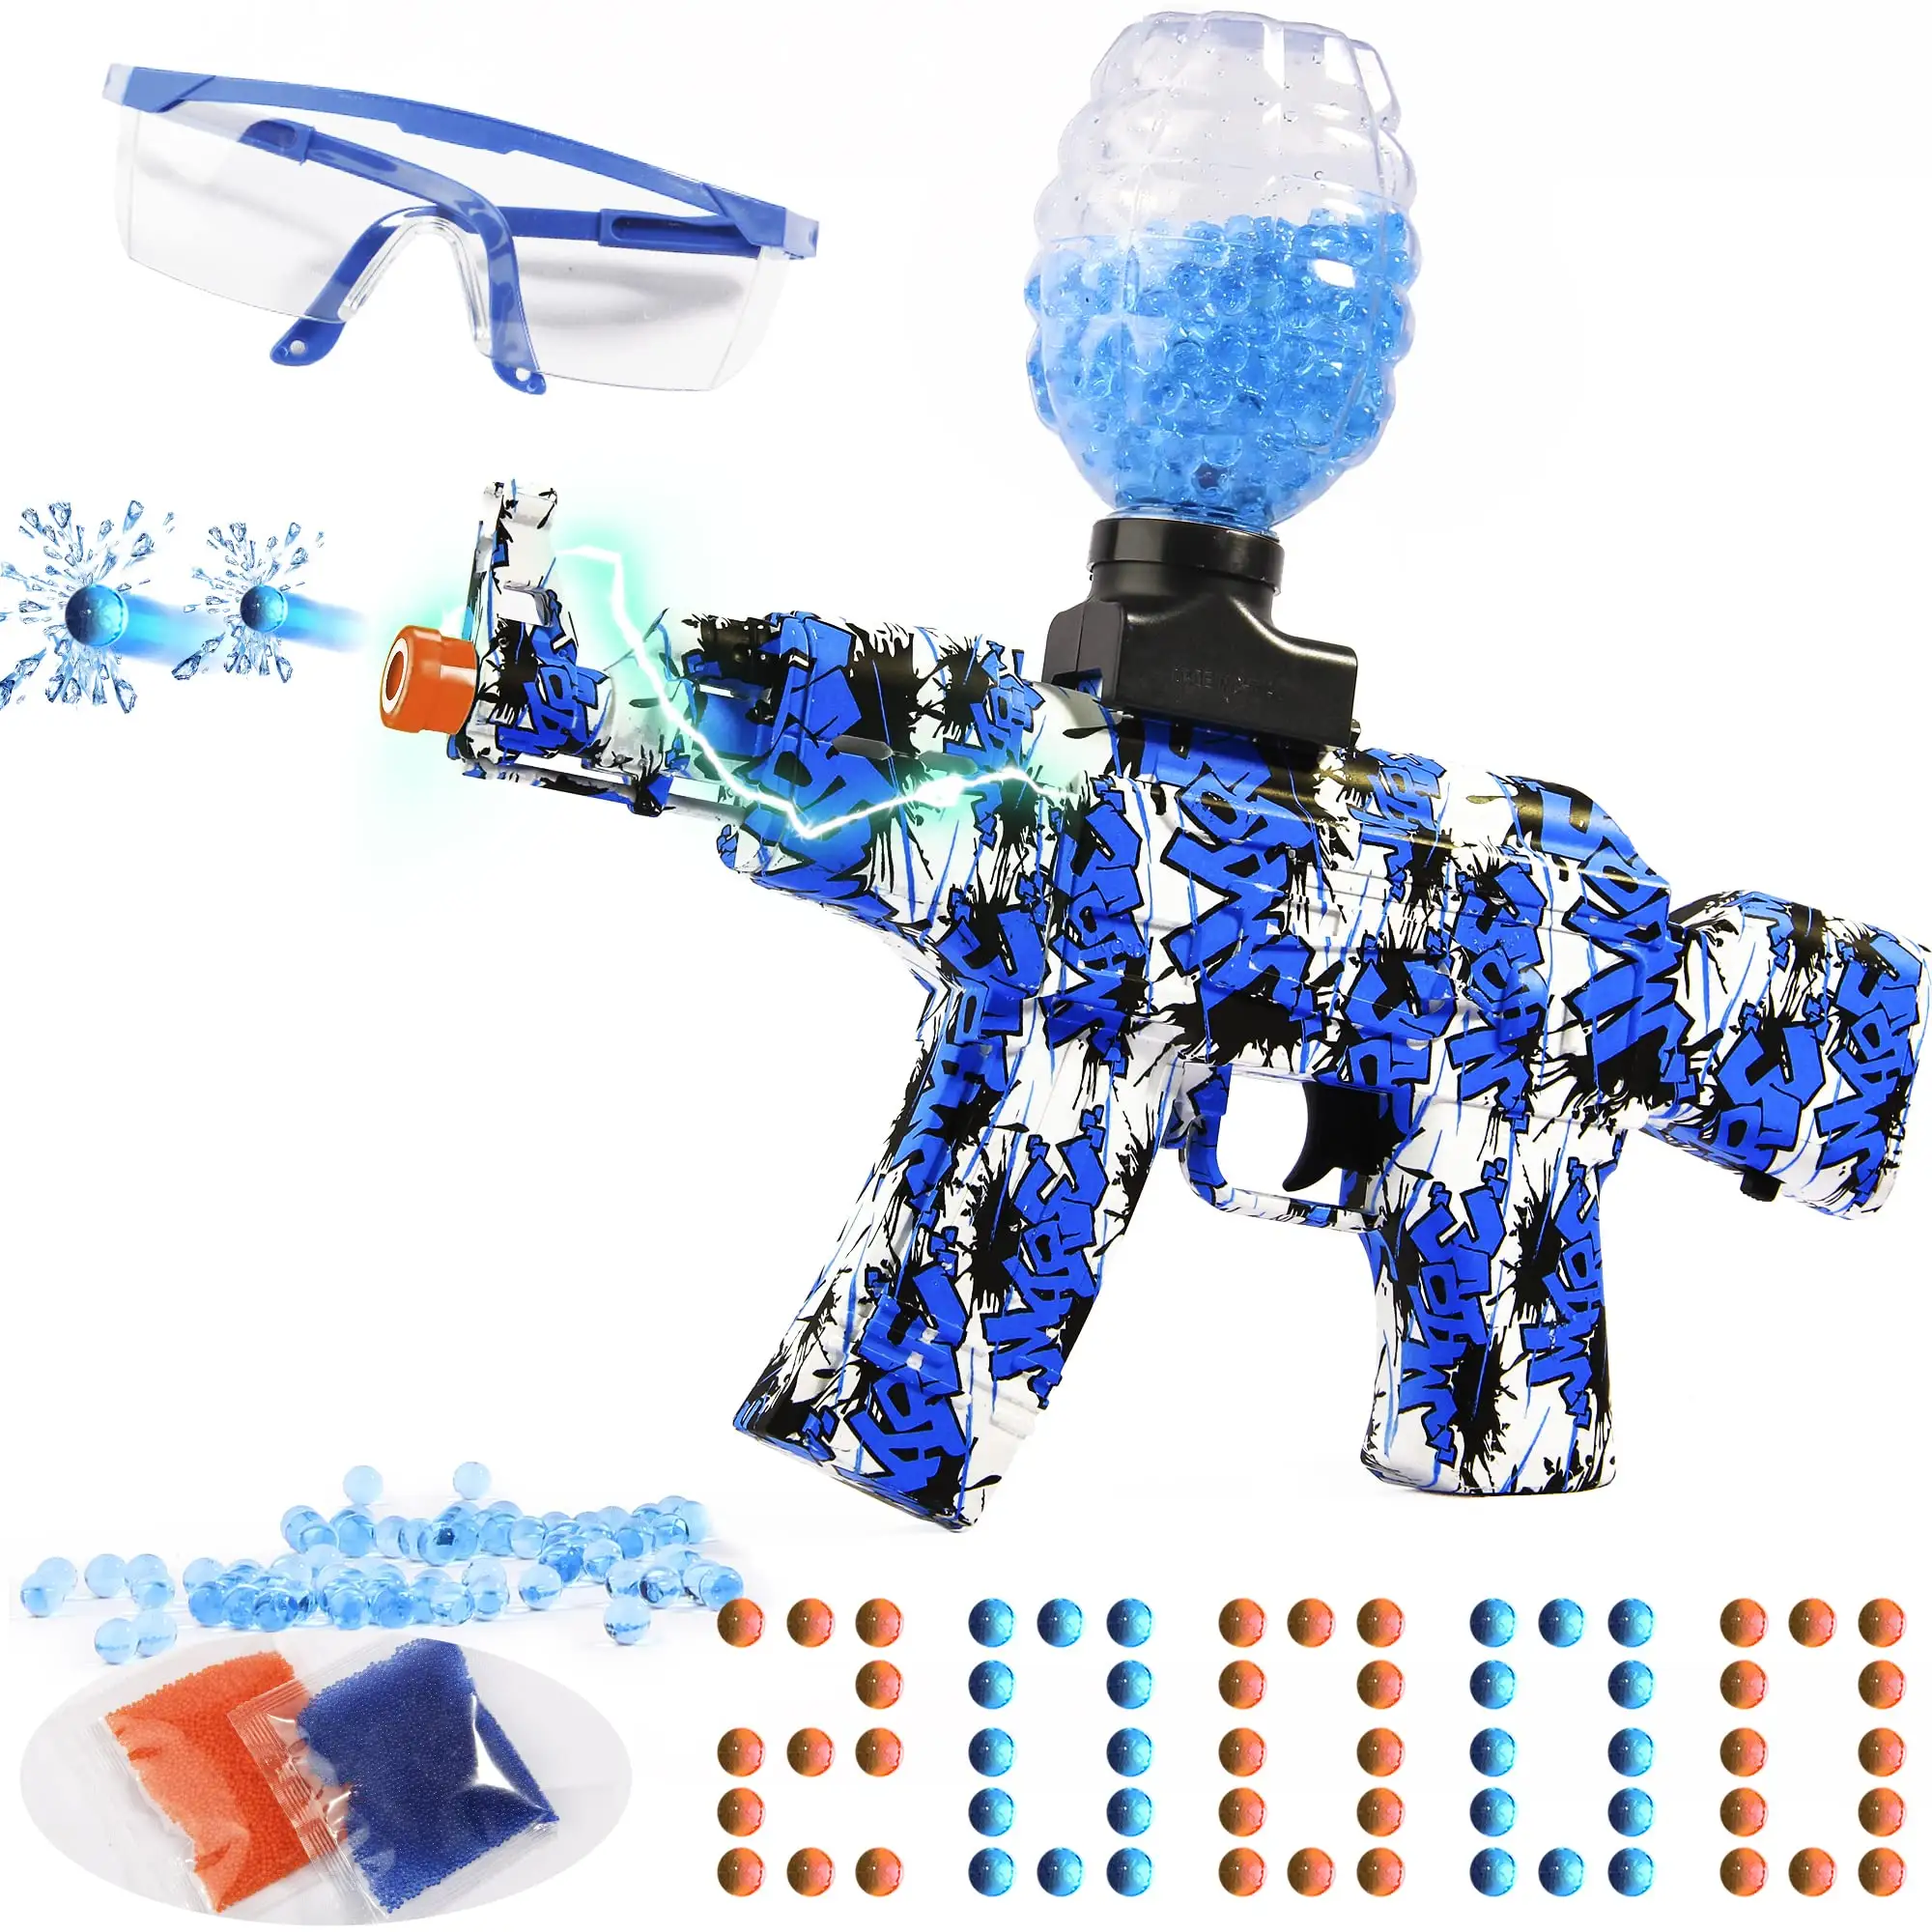 ARTAMBER full auto water splatter  outdoor electric gel water beads ball toy gun